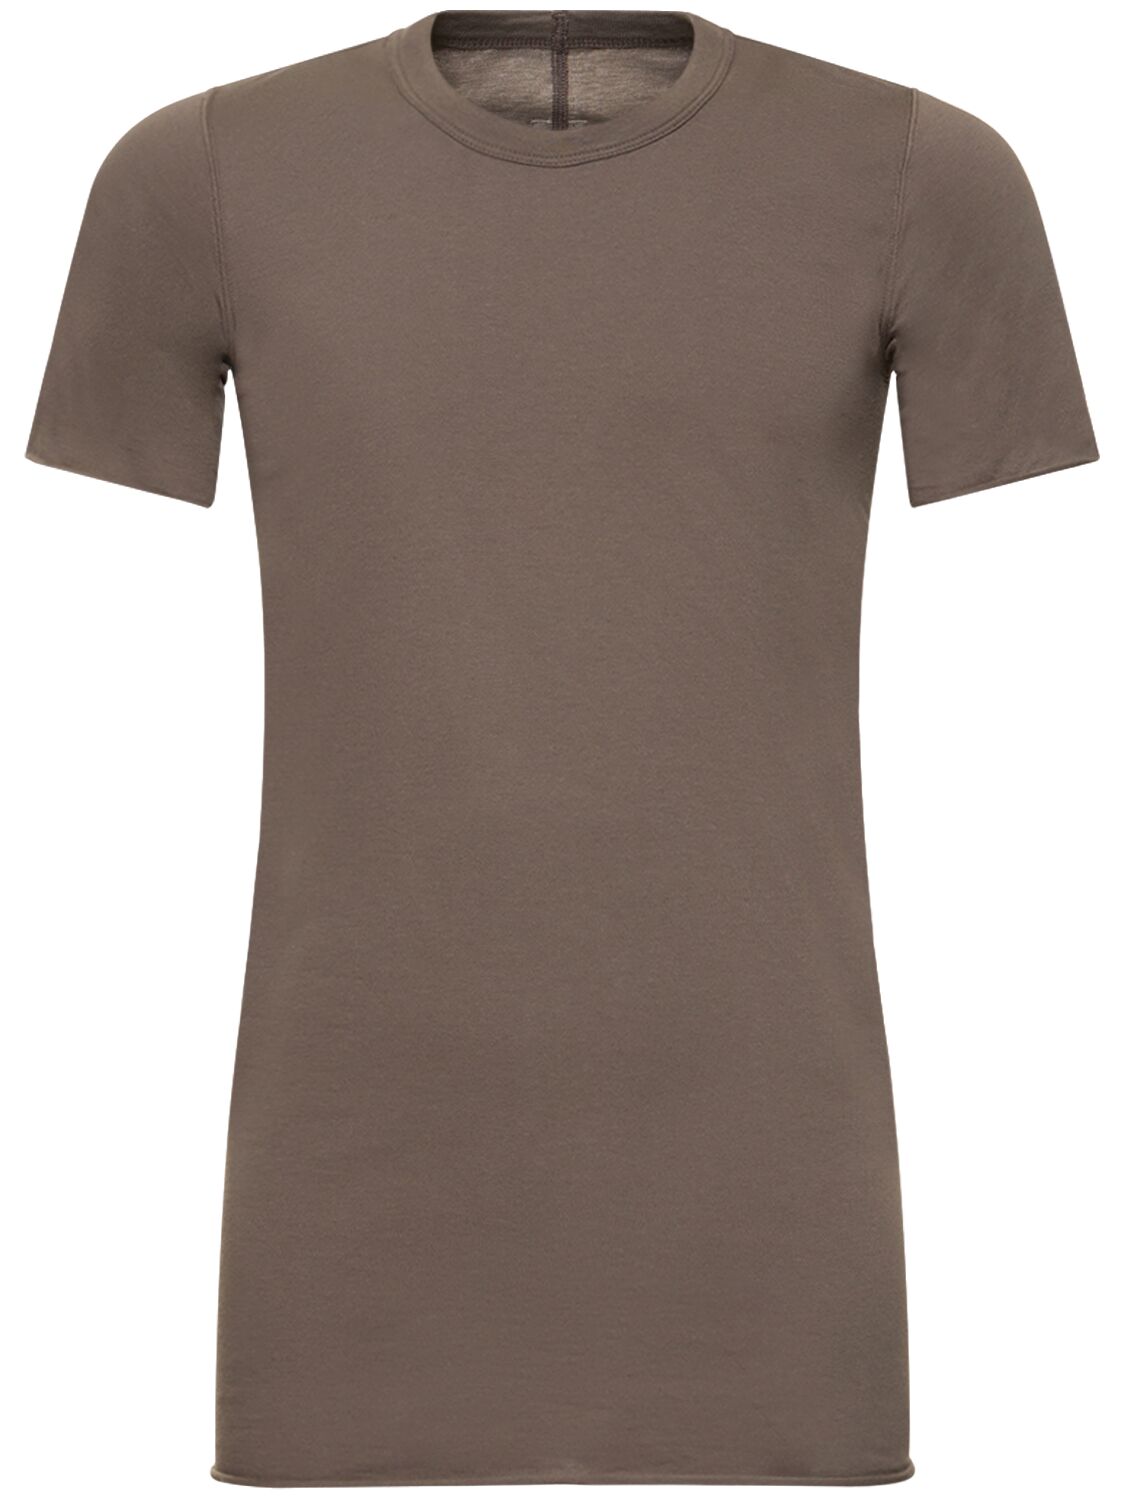 Image of Basic Cotton T-shirt